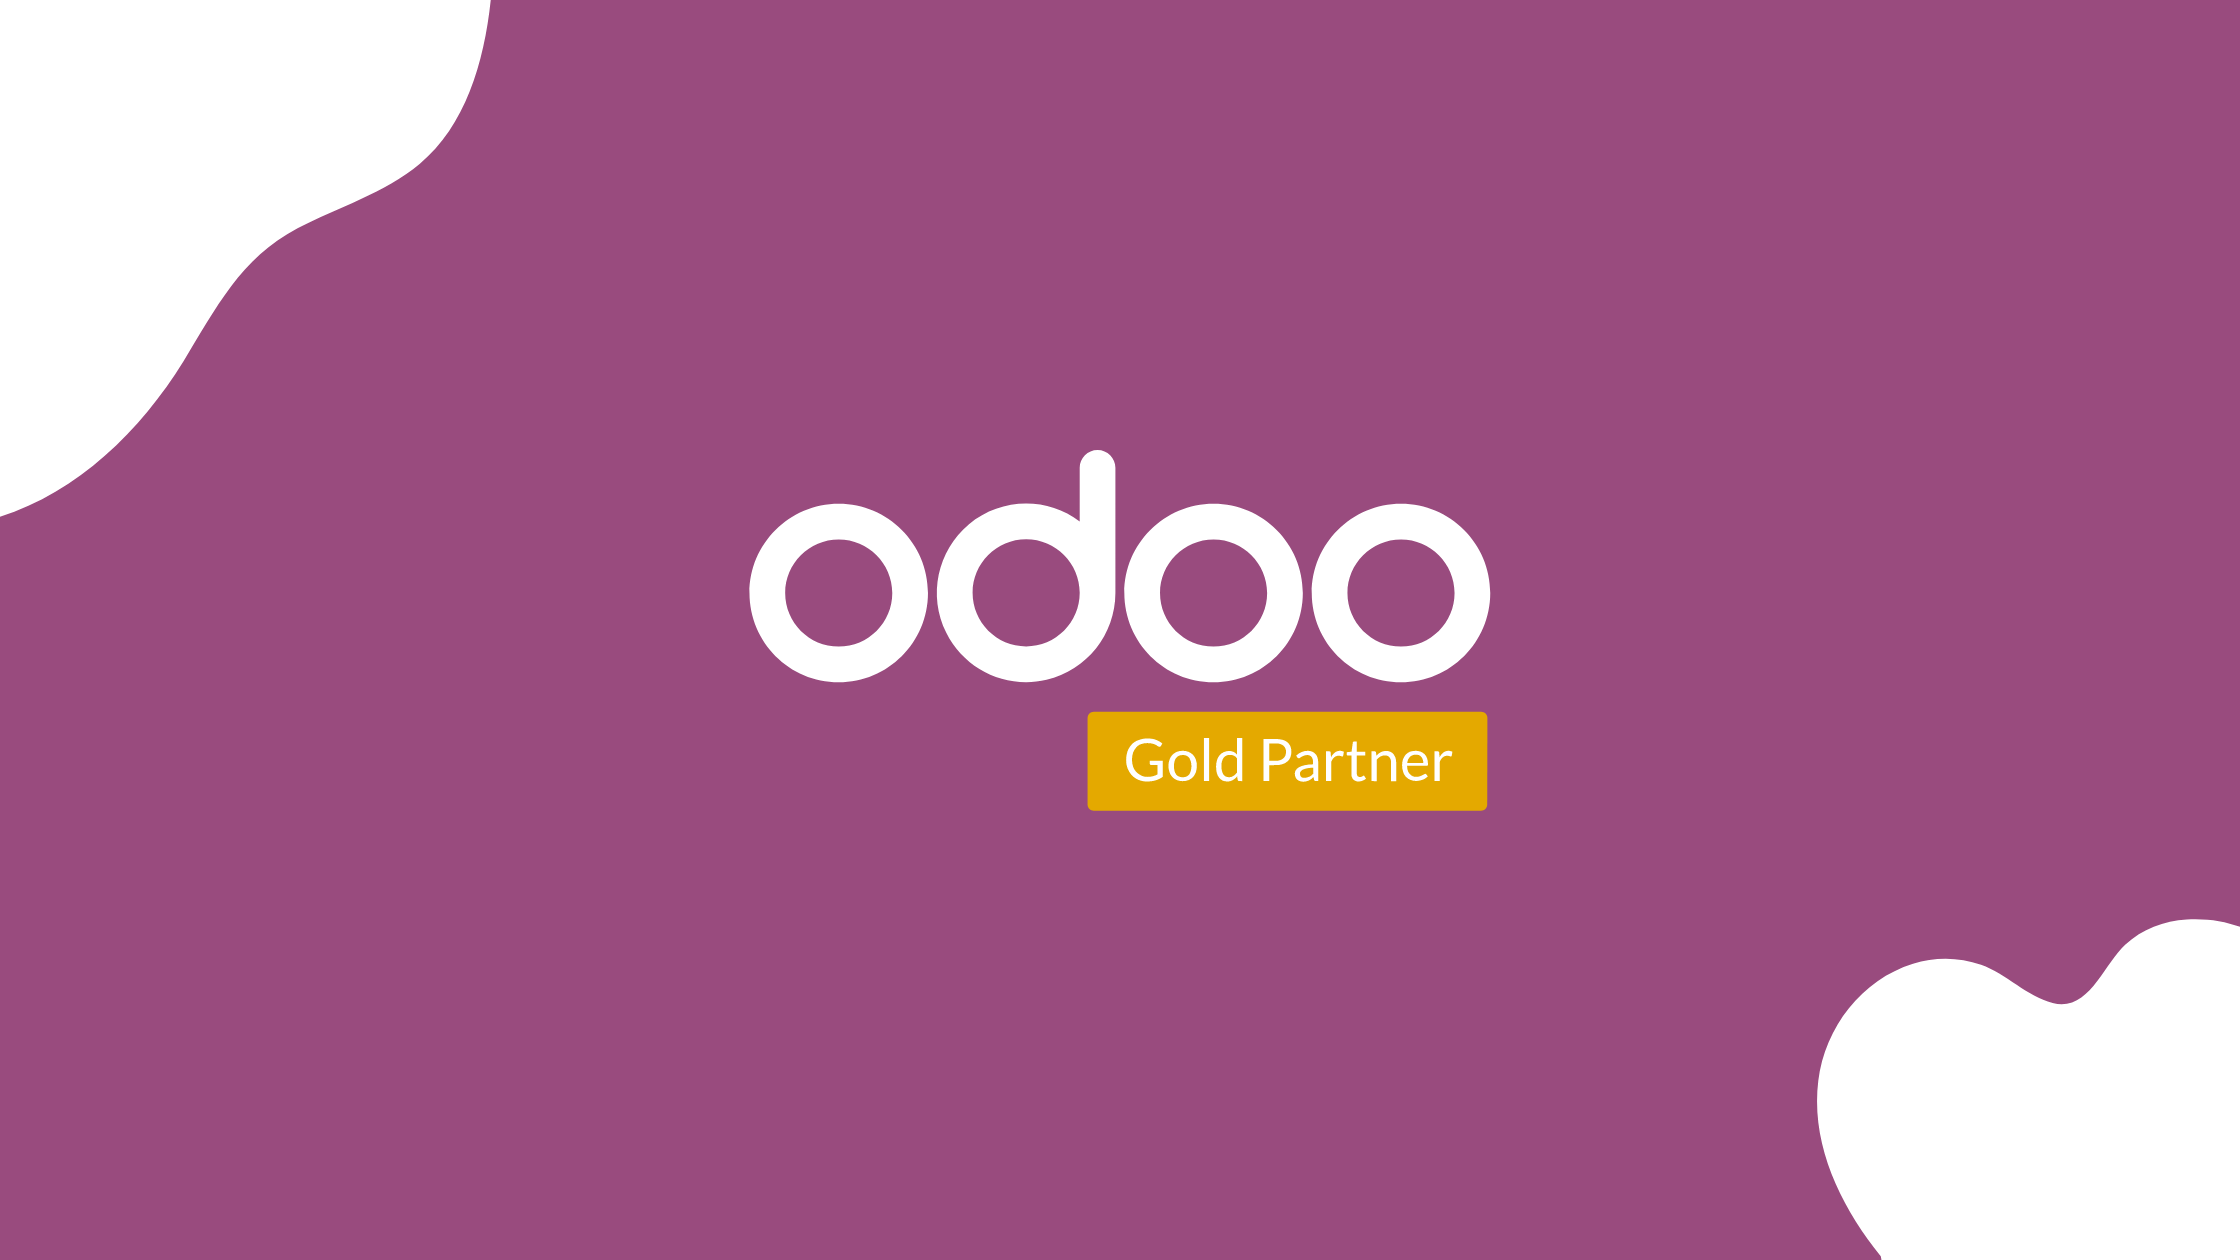 Gold partner de odoo